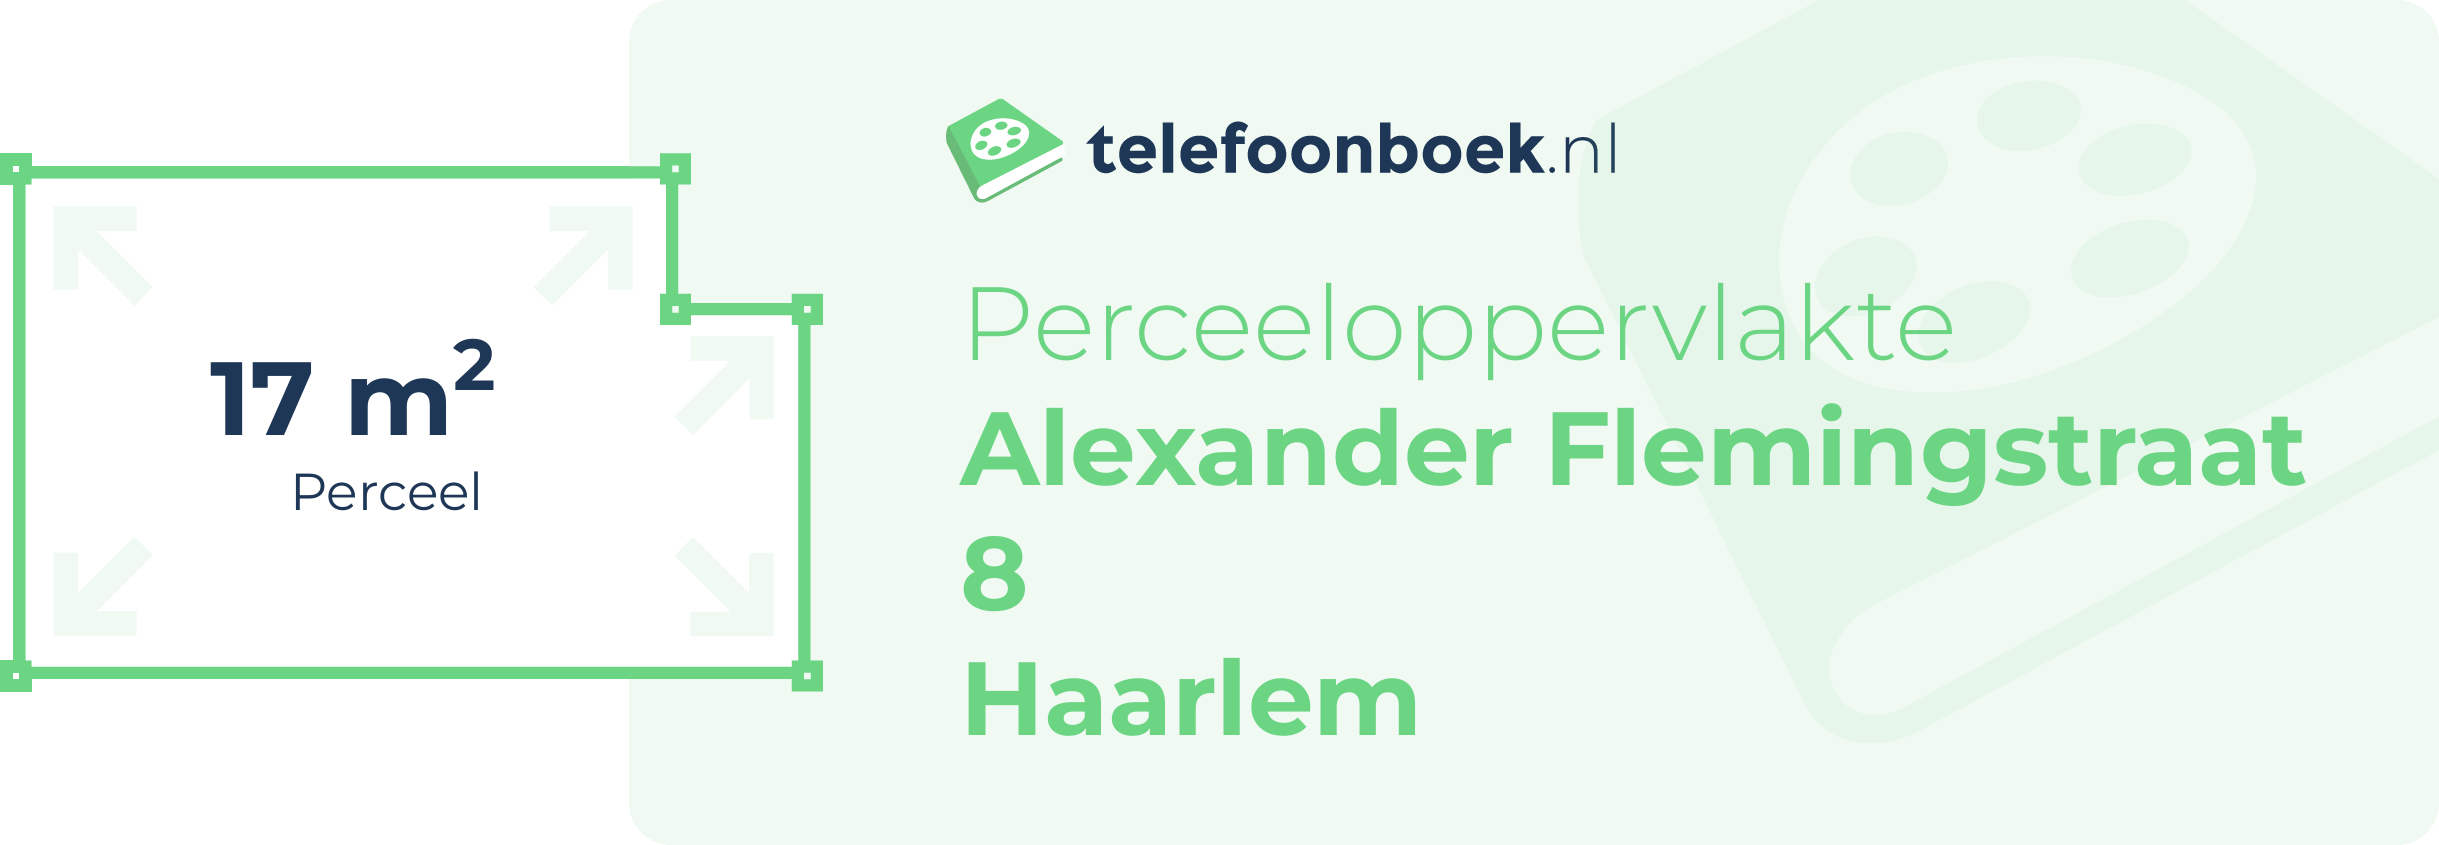 Perceeloppervlakte Alexander Flemingstraat 8 Haarlem